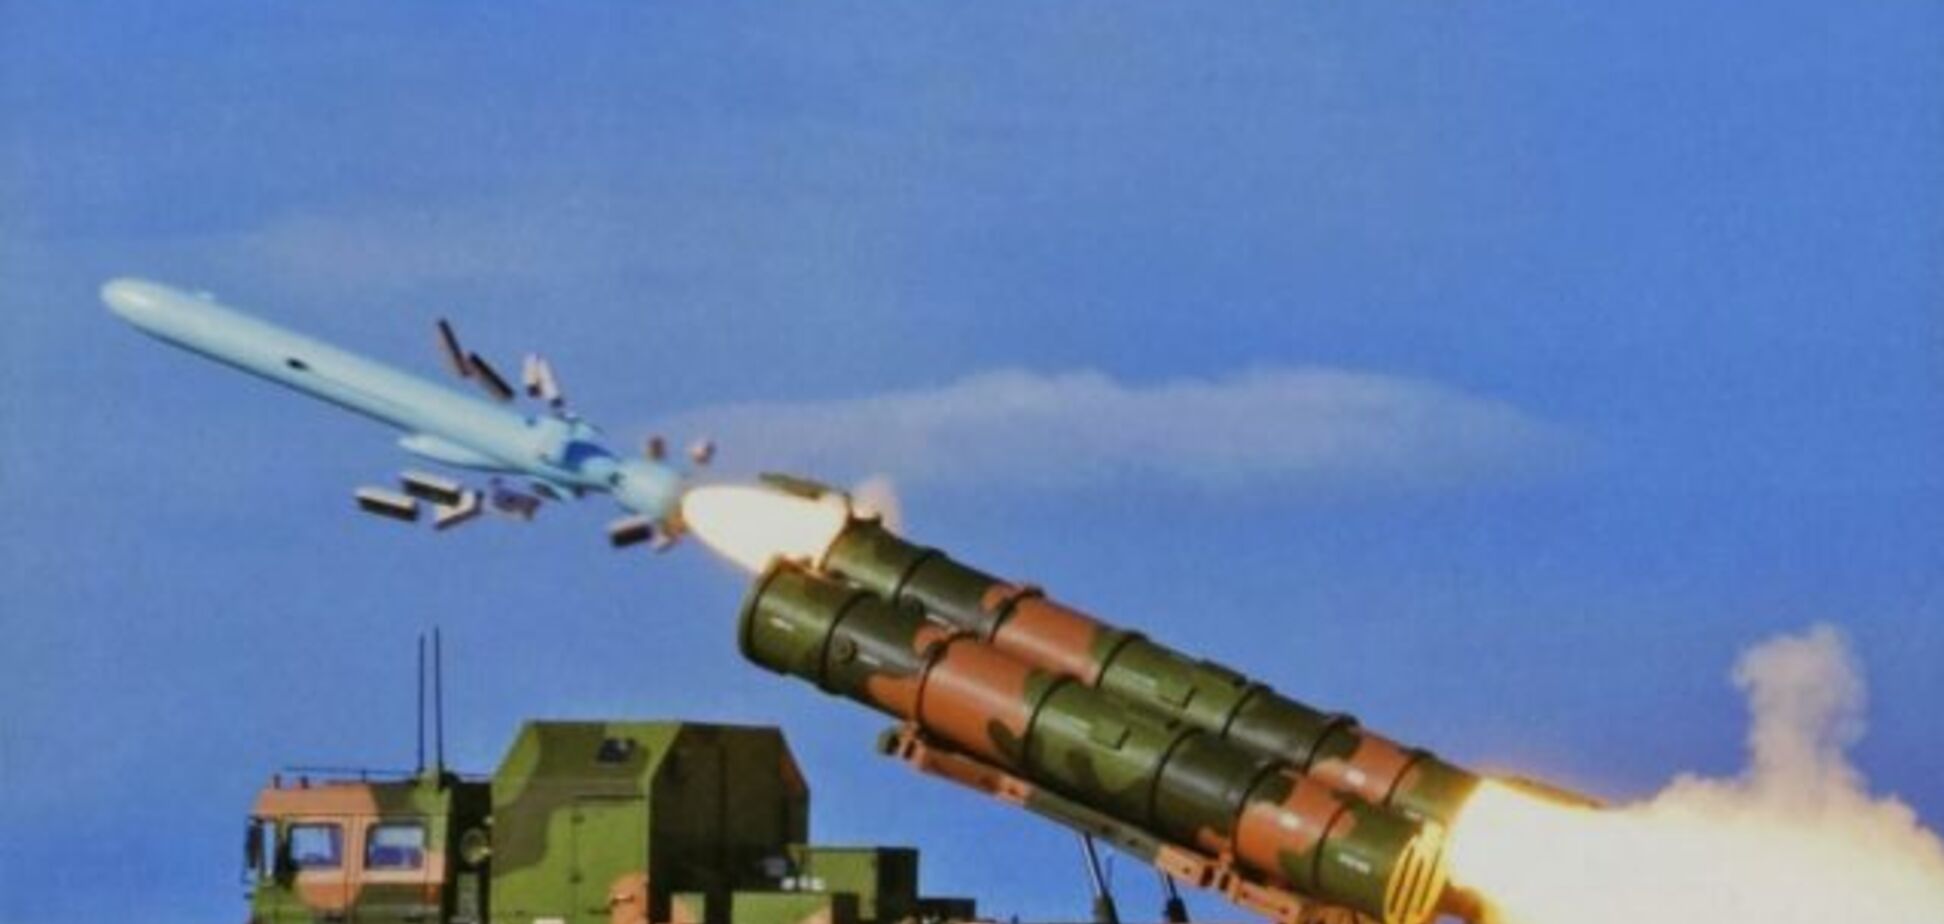  По Китаю или по России? В США заговорили об ответном ракетном ударе